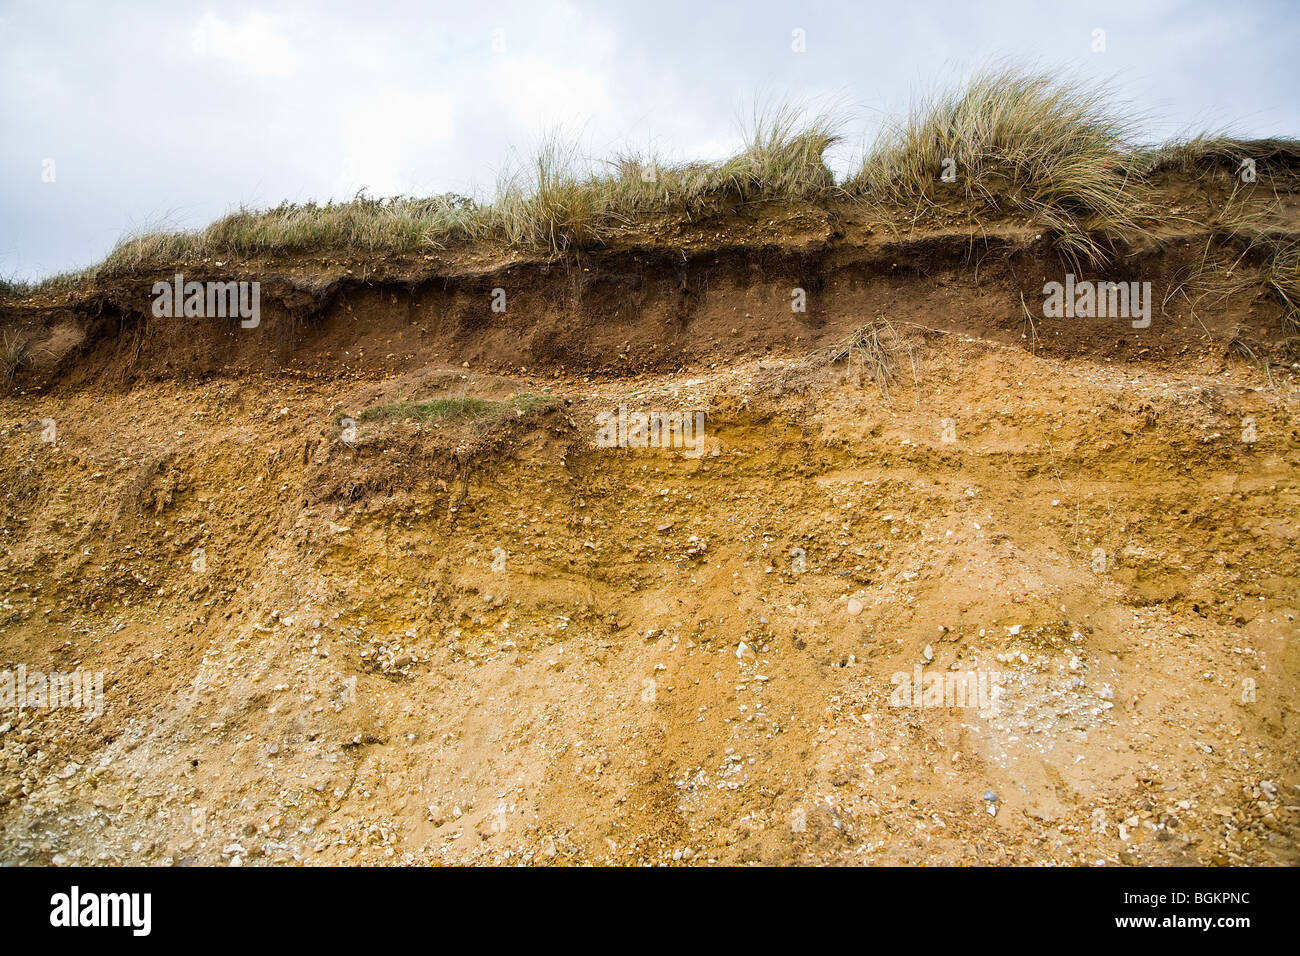 Les couches du sol a révélé montrant l'érosion des sols à partir de la top-falaise surplombant la plage de Bournemouth. Bournemouth, Dorset. UK. Banque D'Images